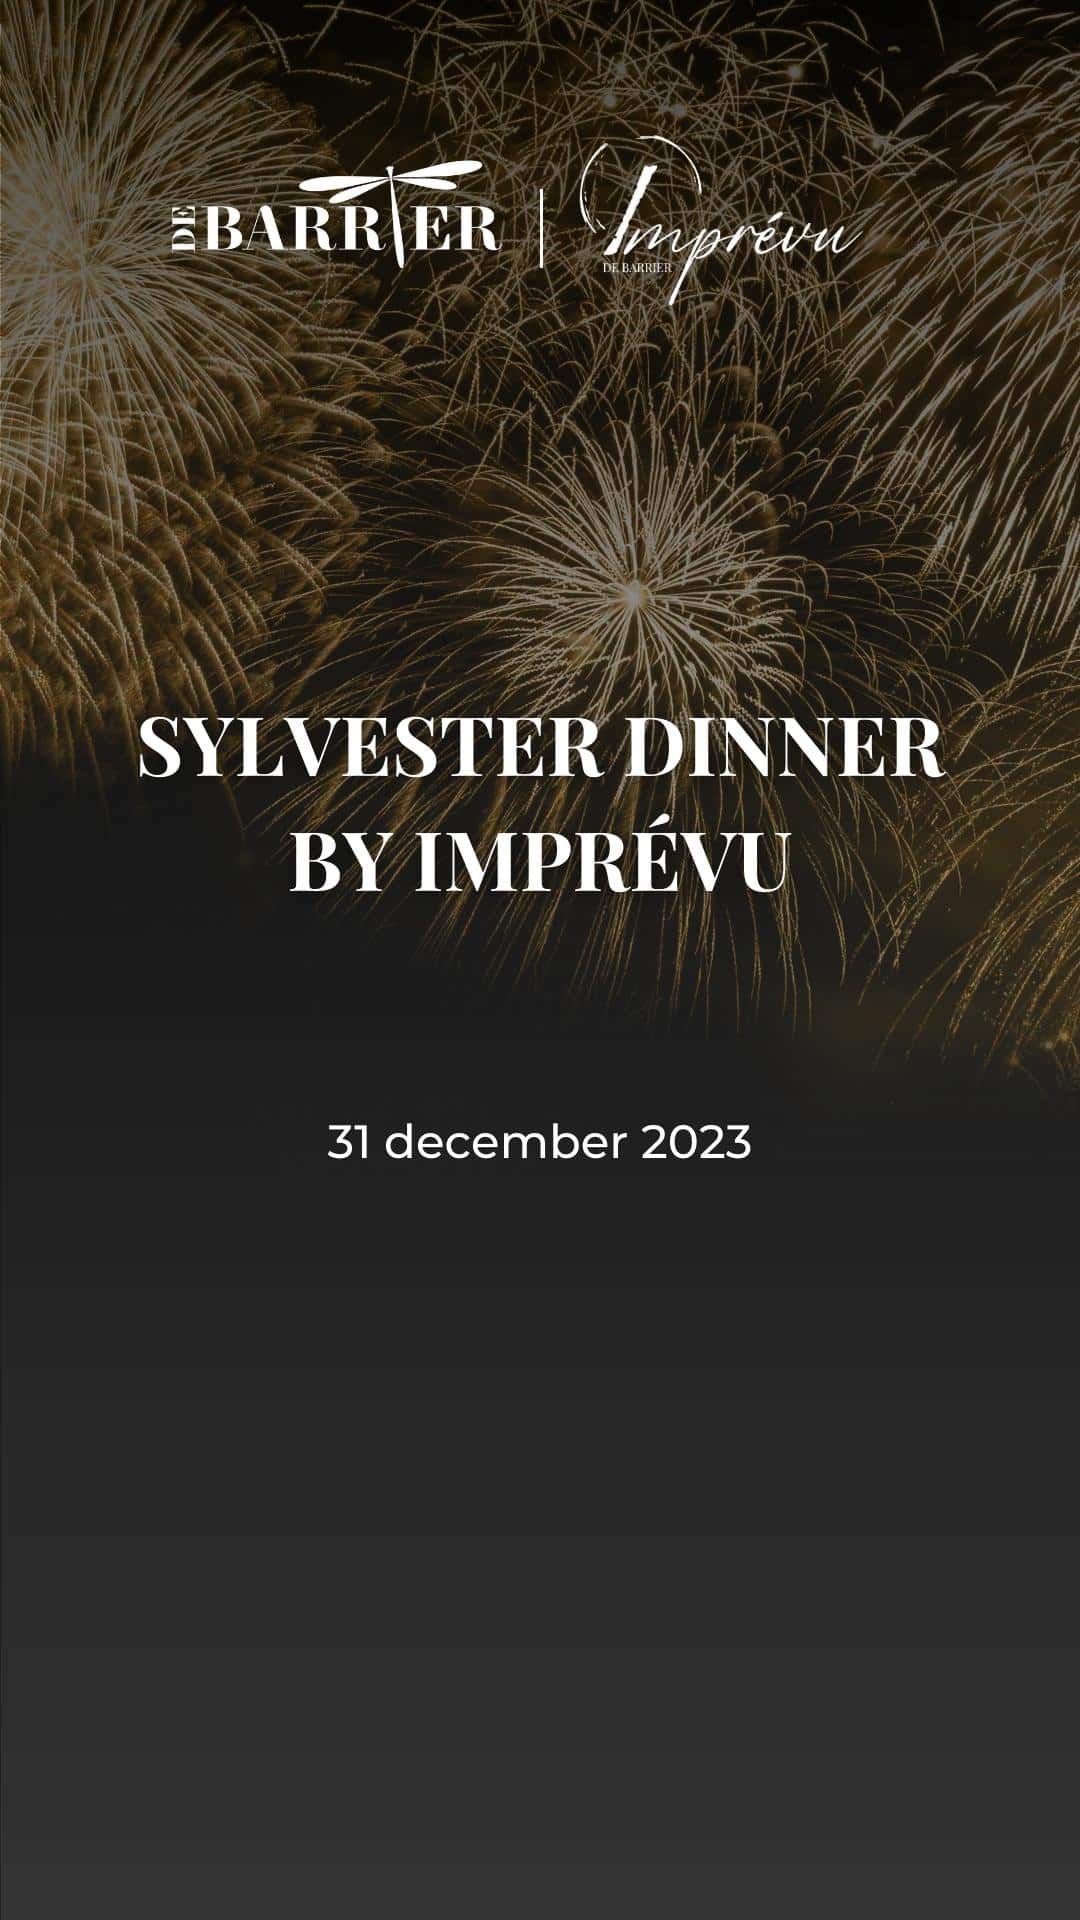 Sylvester dinner by Imprévu